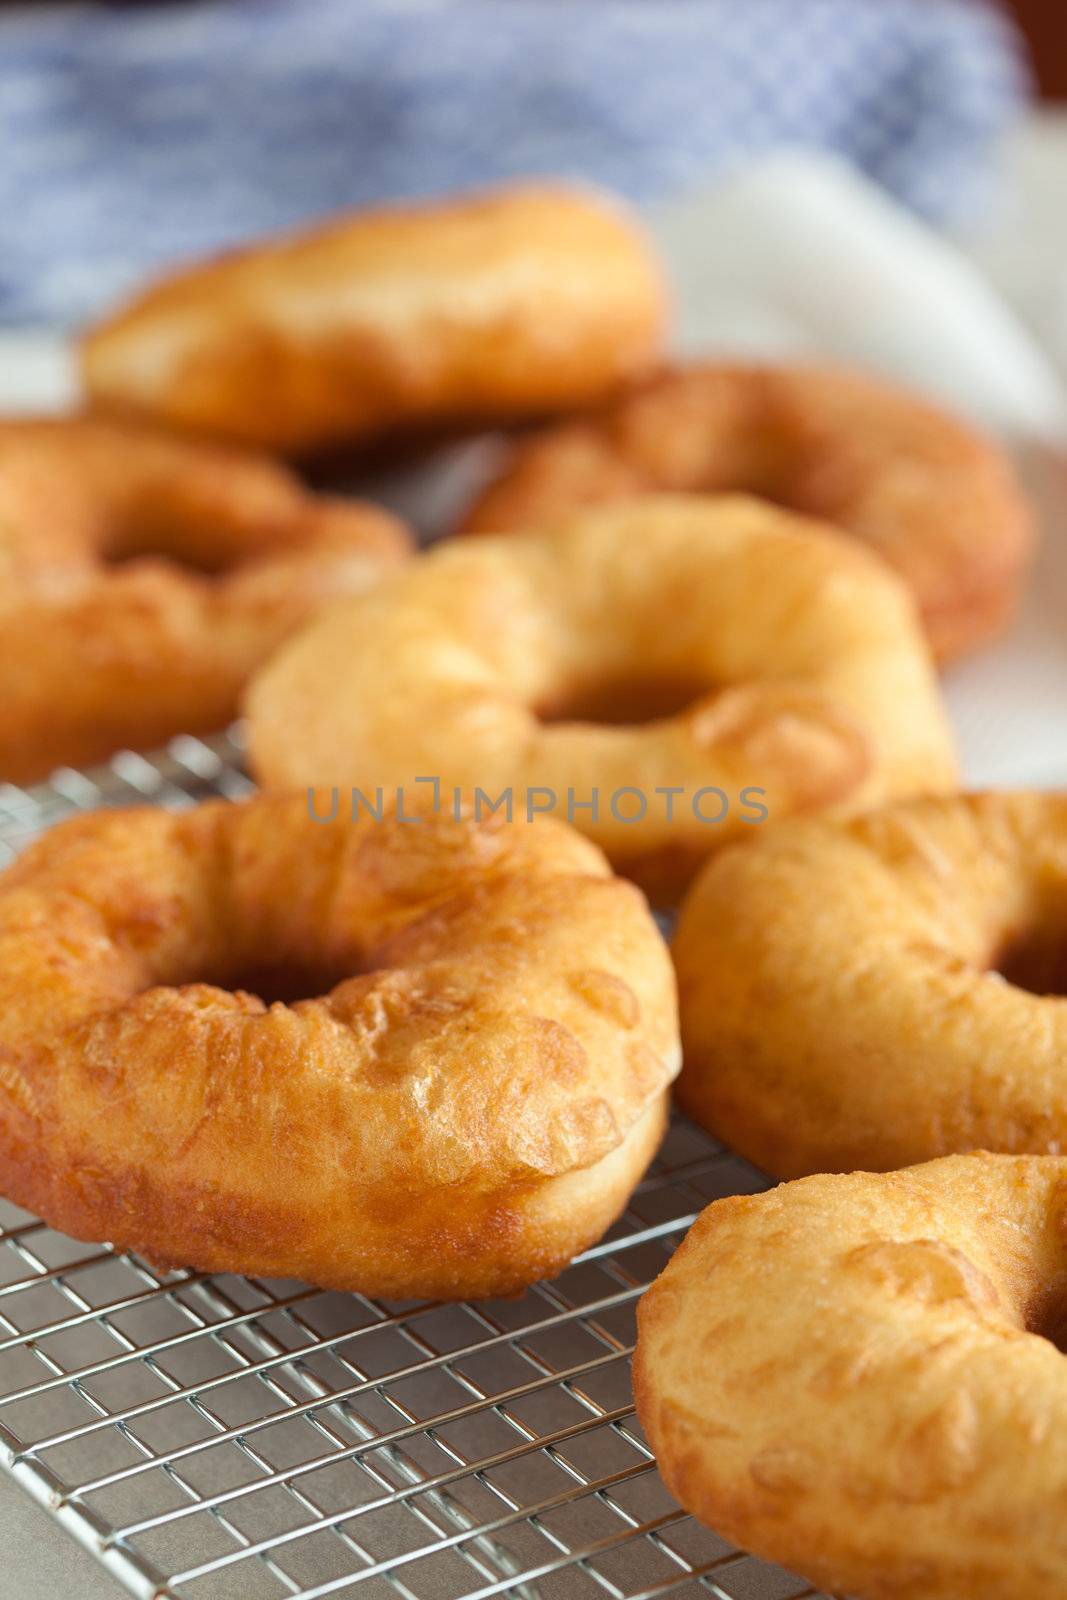 Fresh doughnuts by Fotosmurf